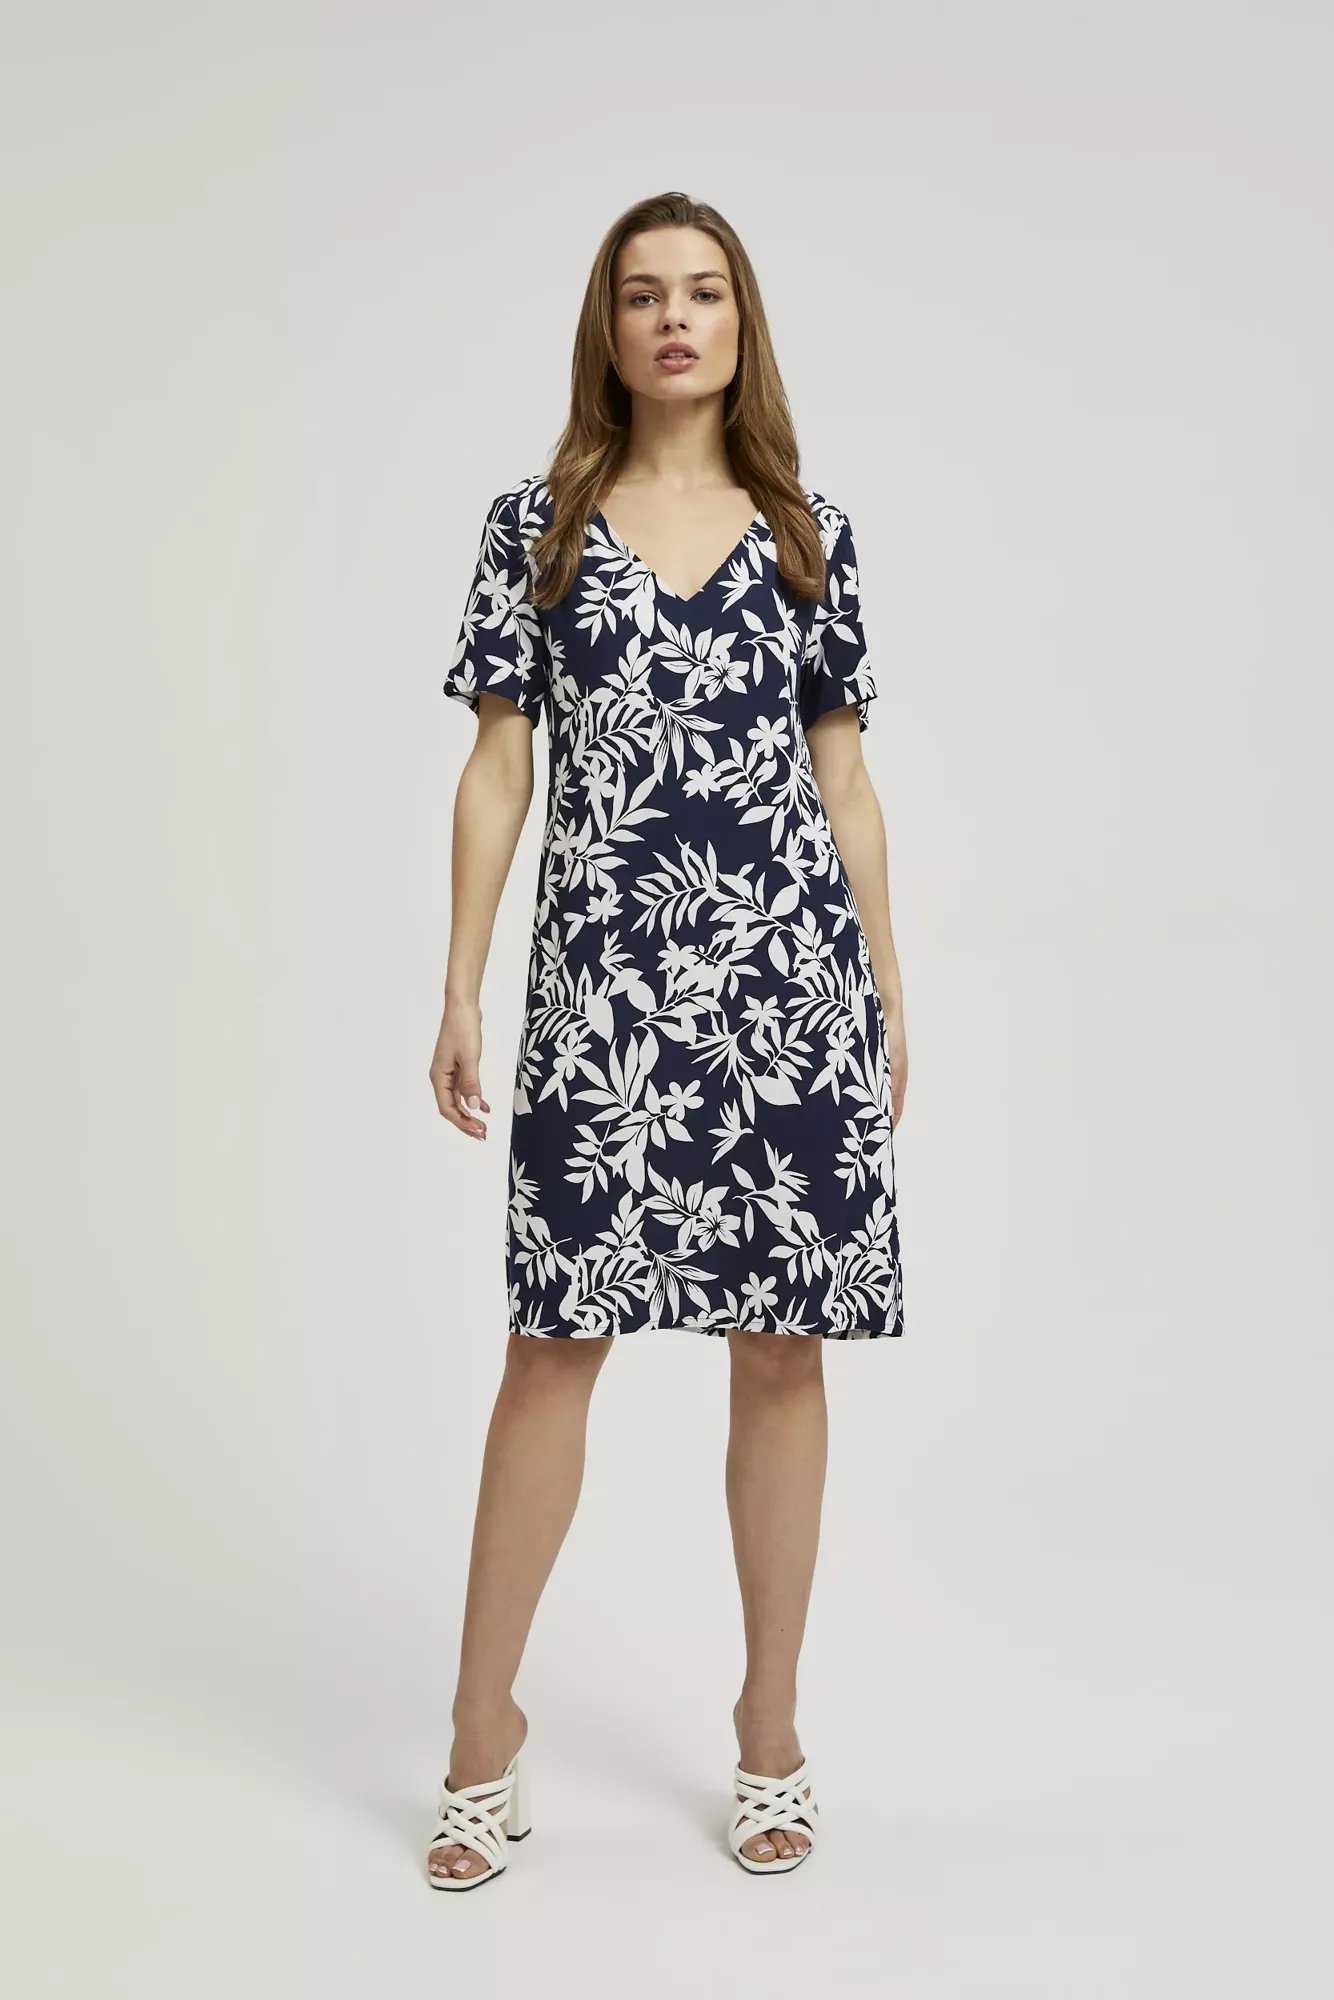 Women's dress MOODO - navy blue, floral pattern